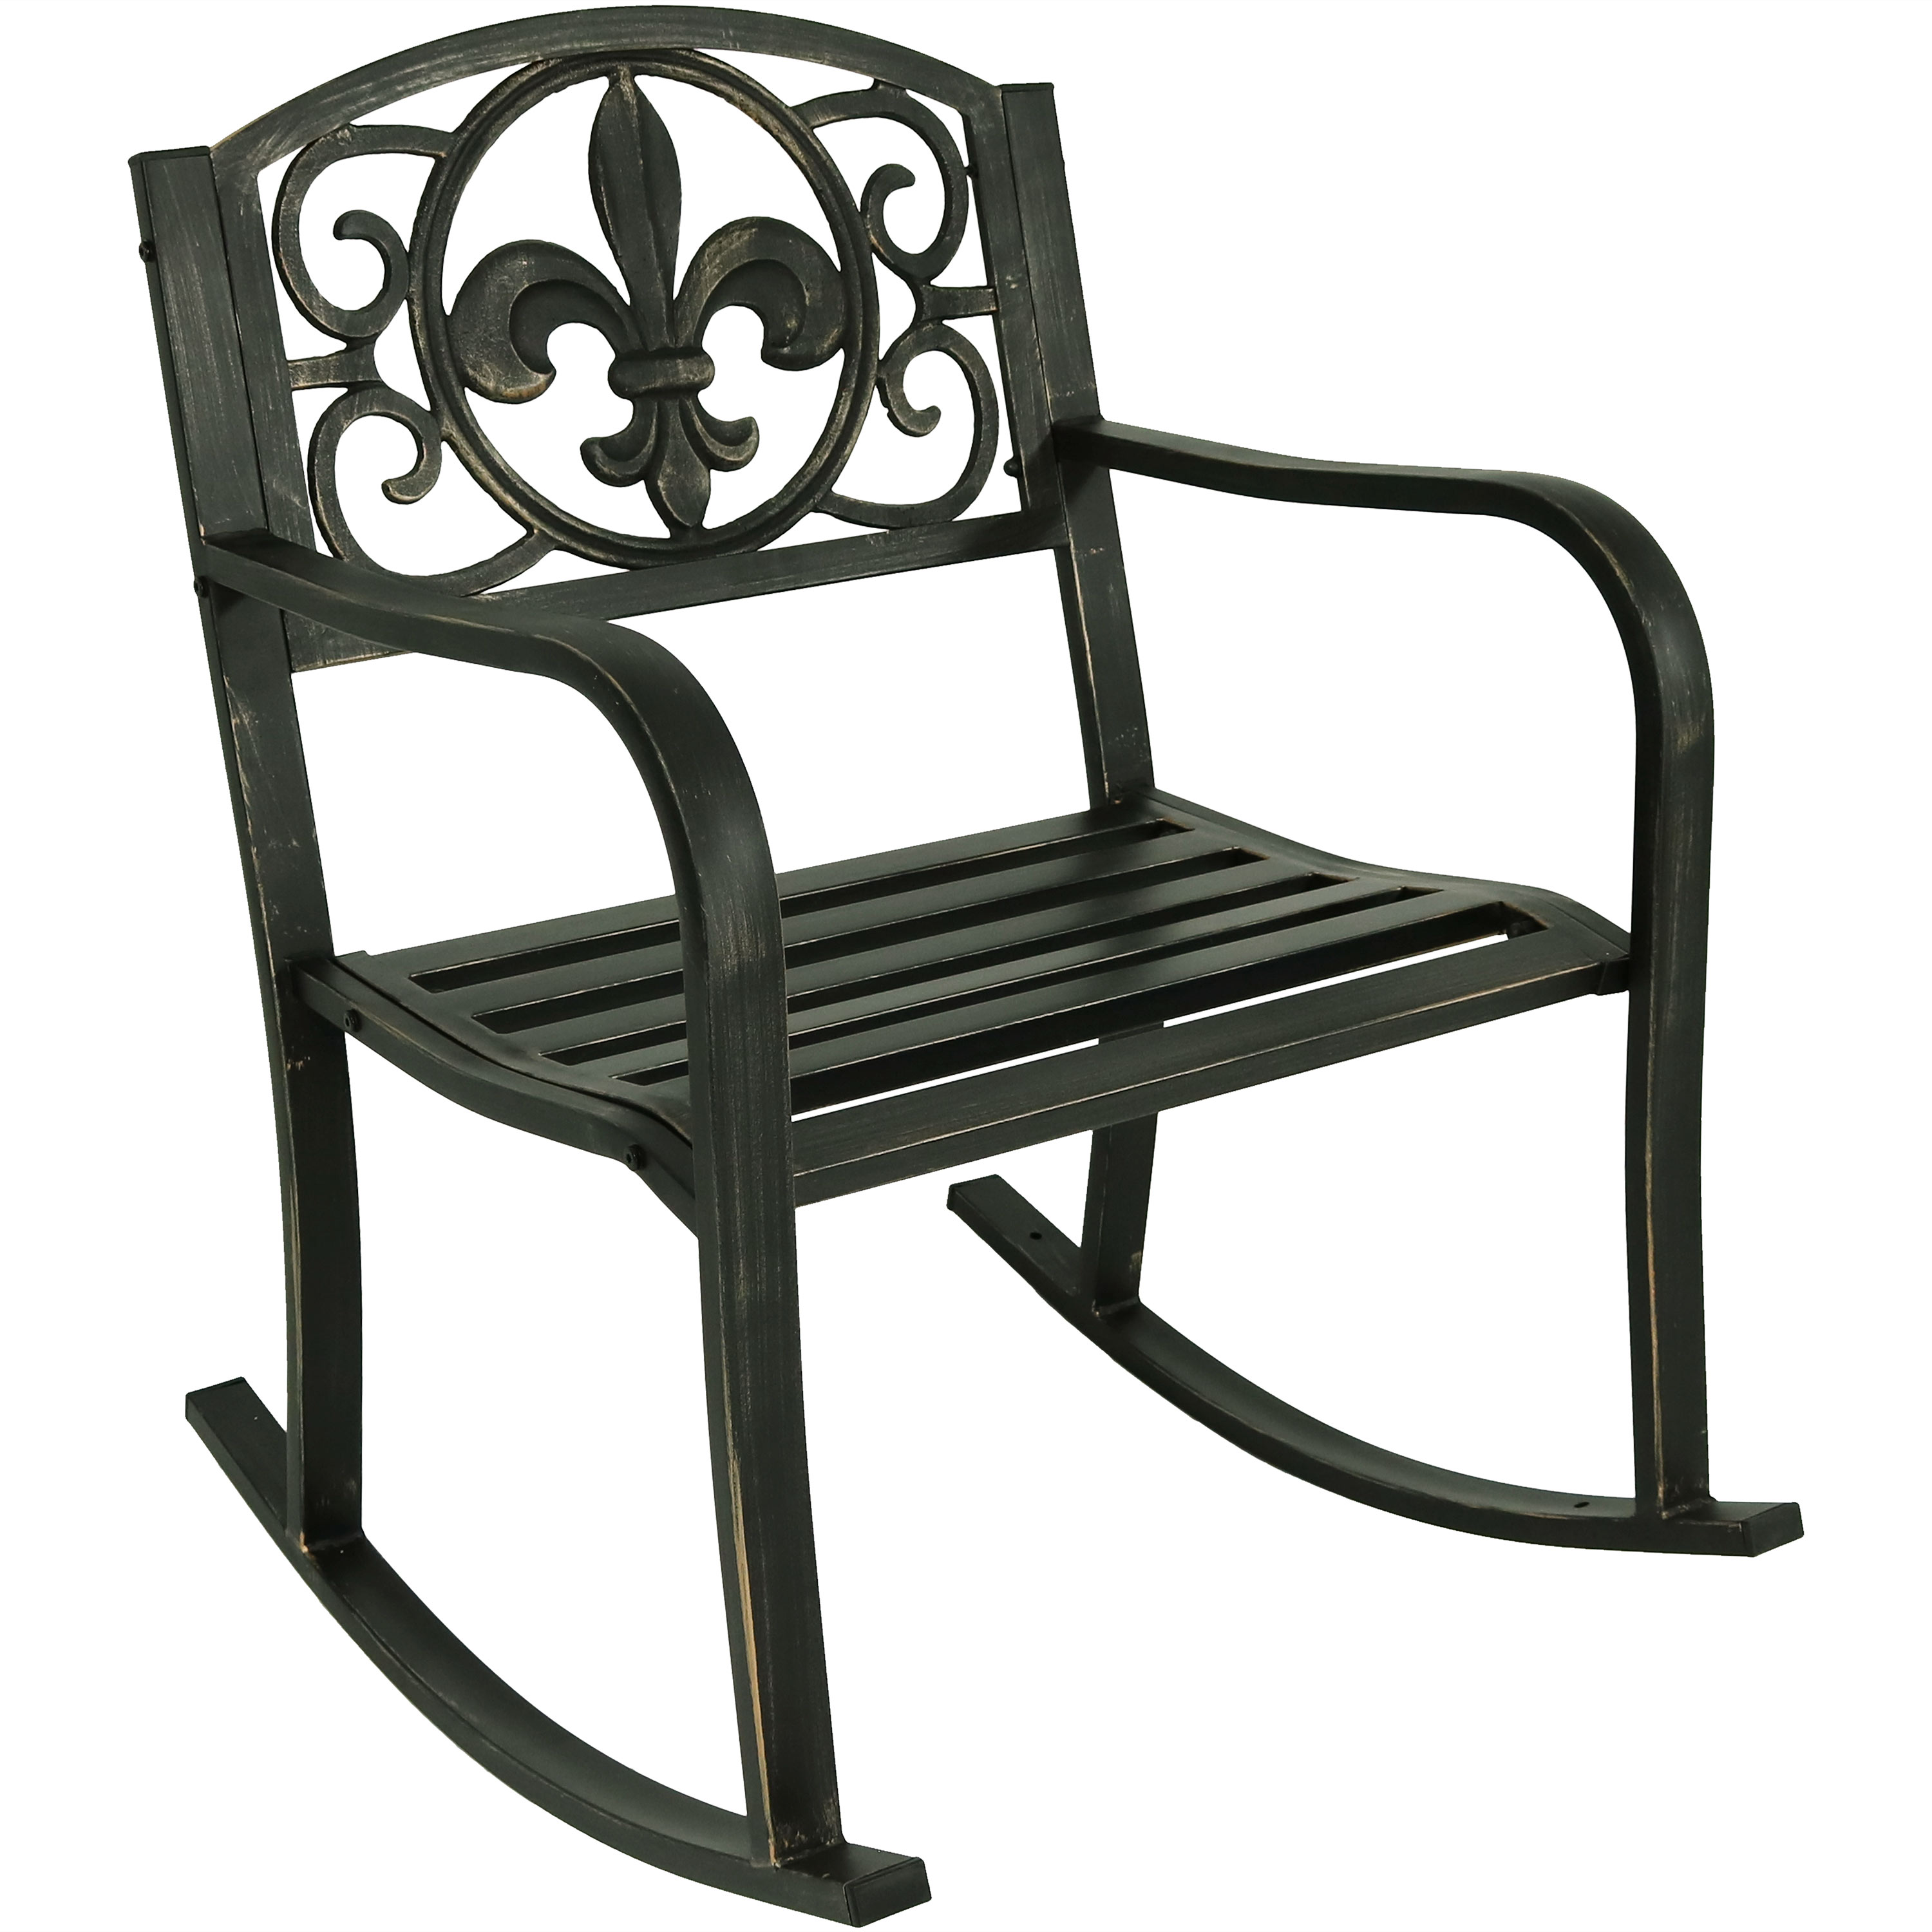 Sunnydaze Patio Rocking Chair - Cast Iron and Steel - Fleur-De-Lis Design